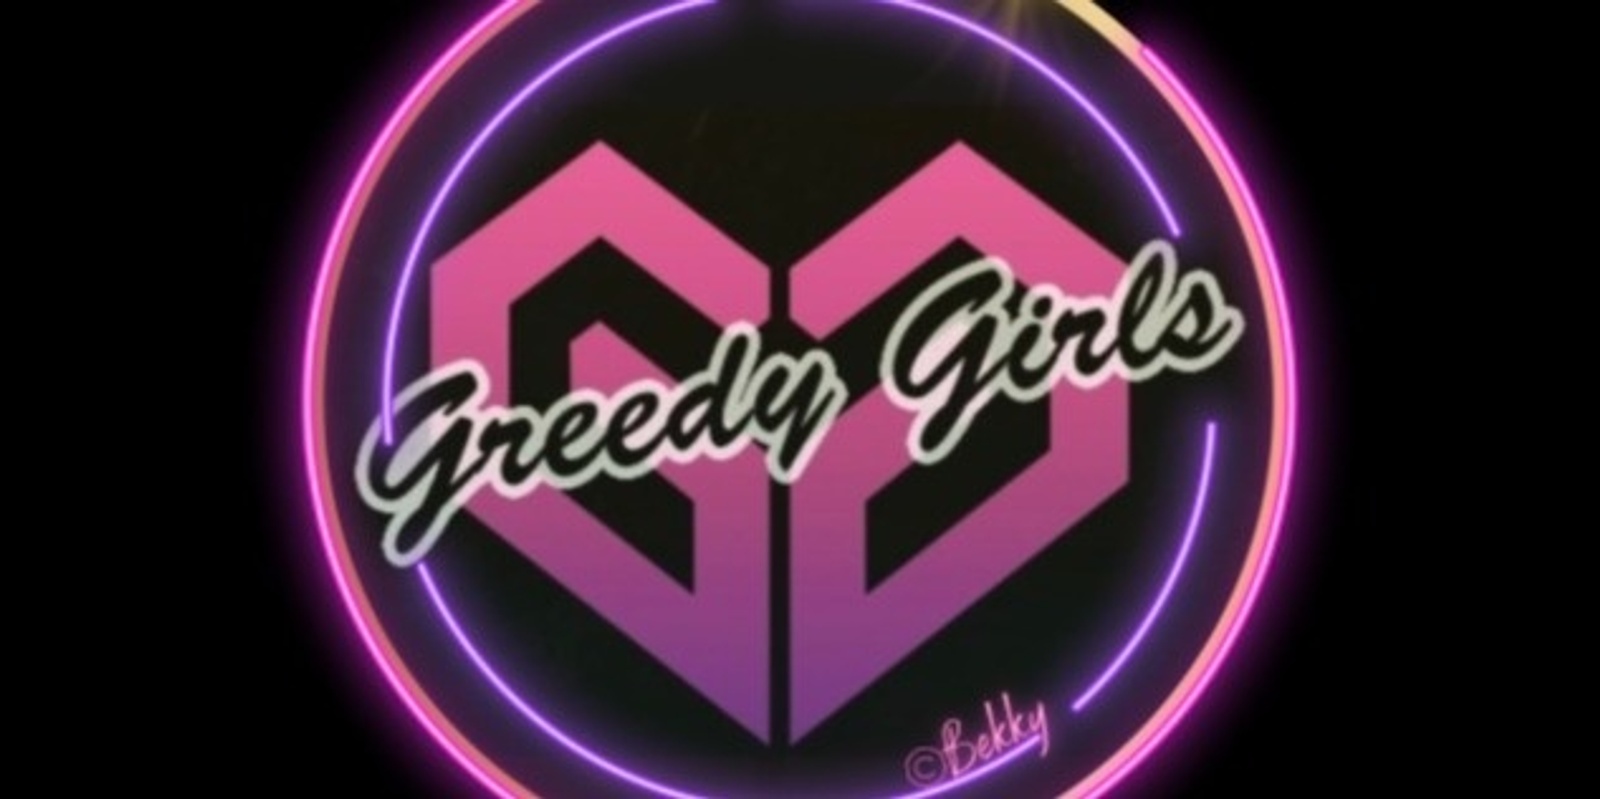 Banner image for Greedy Girls Sinsational Social Invite